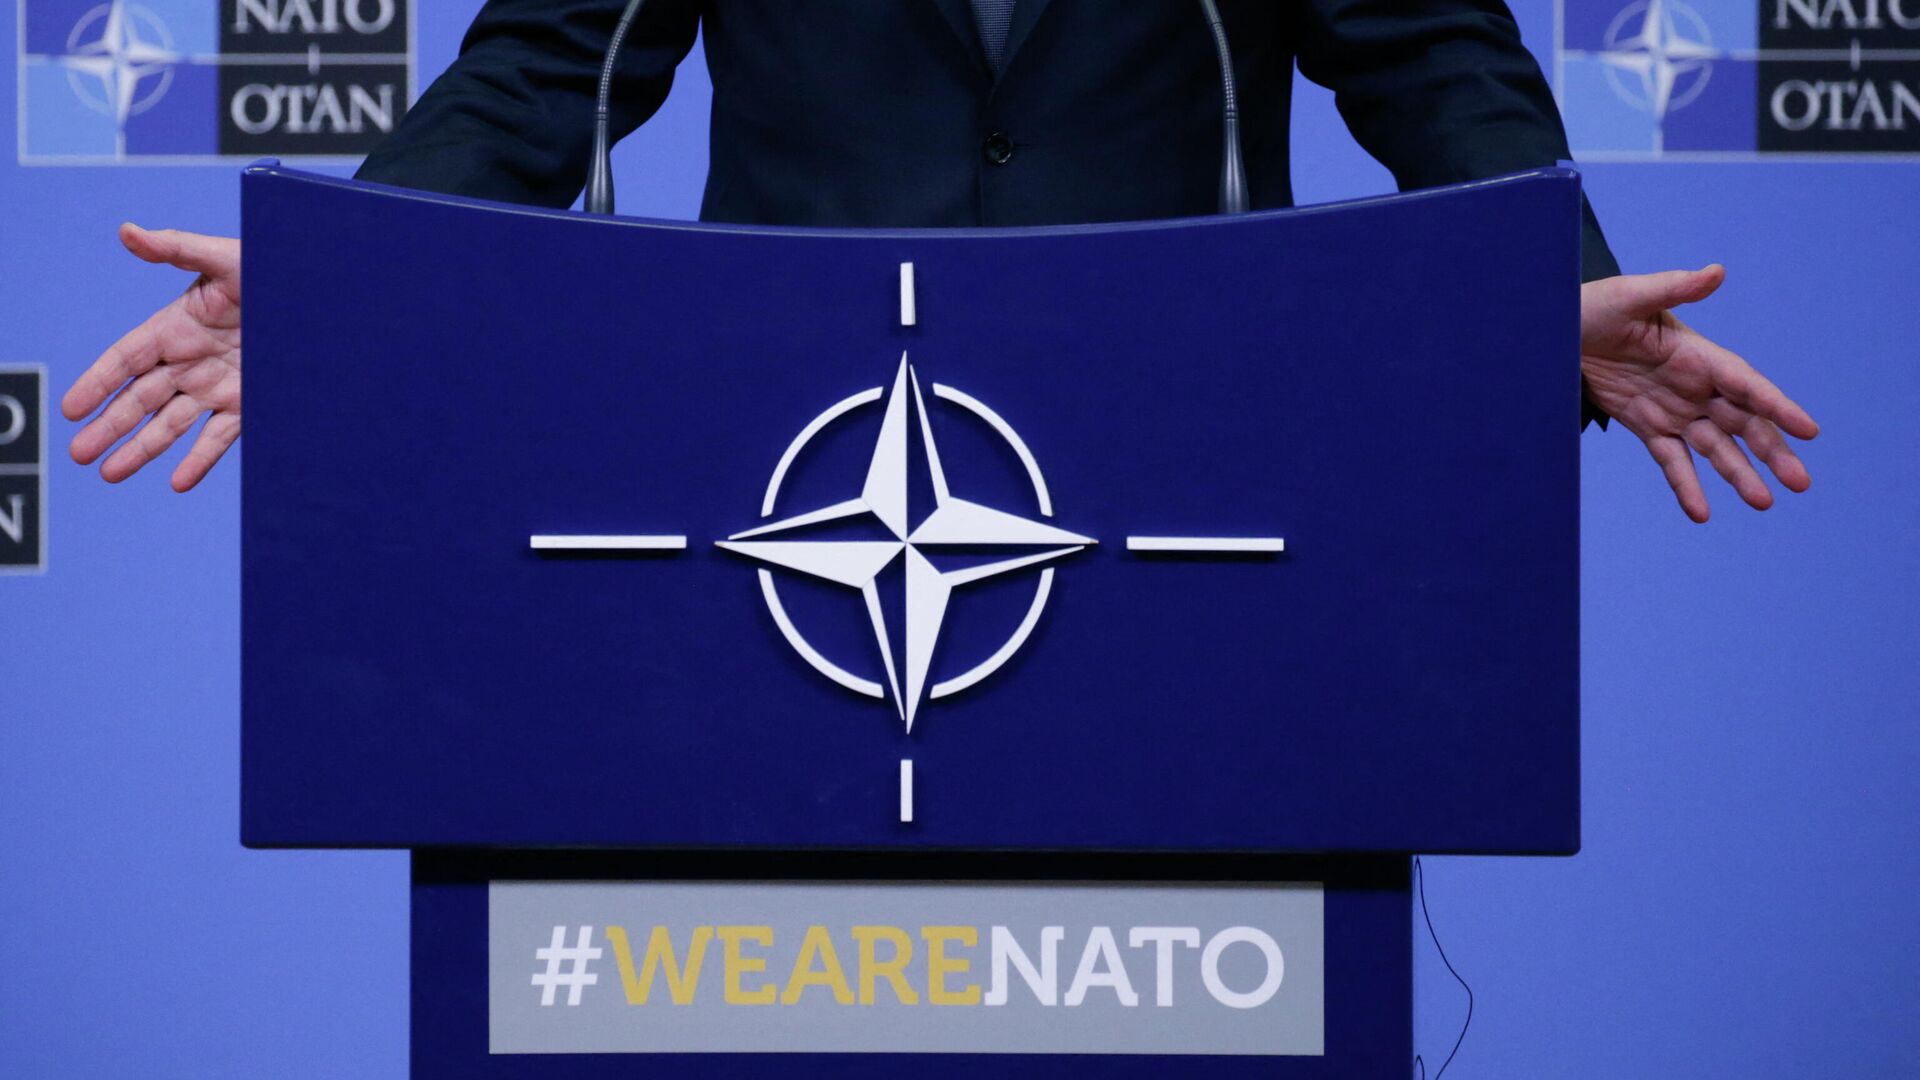 Логотип НАТО. Генеральный секретарь НАТО Йенс Столтенберг проводит пресс-конференцию во время встречи министров обороны стран НАТО в Брюсселе, 13 февраля 2020 г. - РИА Новости, 1920, 14.01.2022